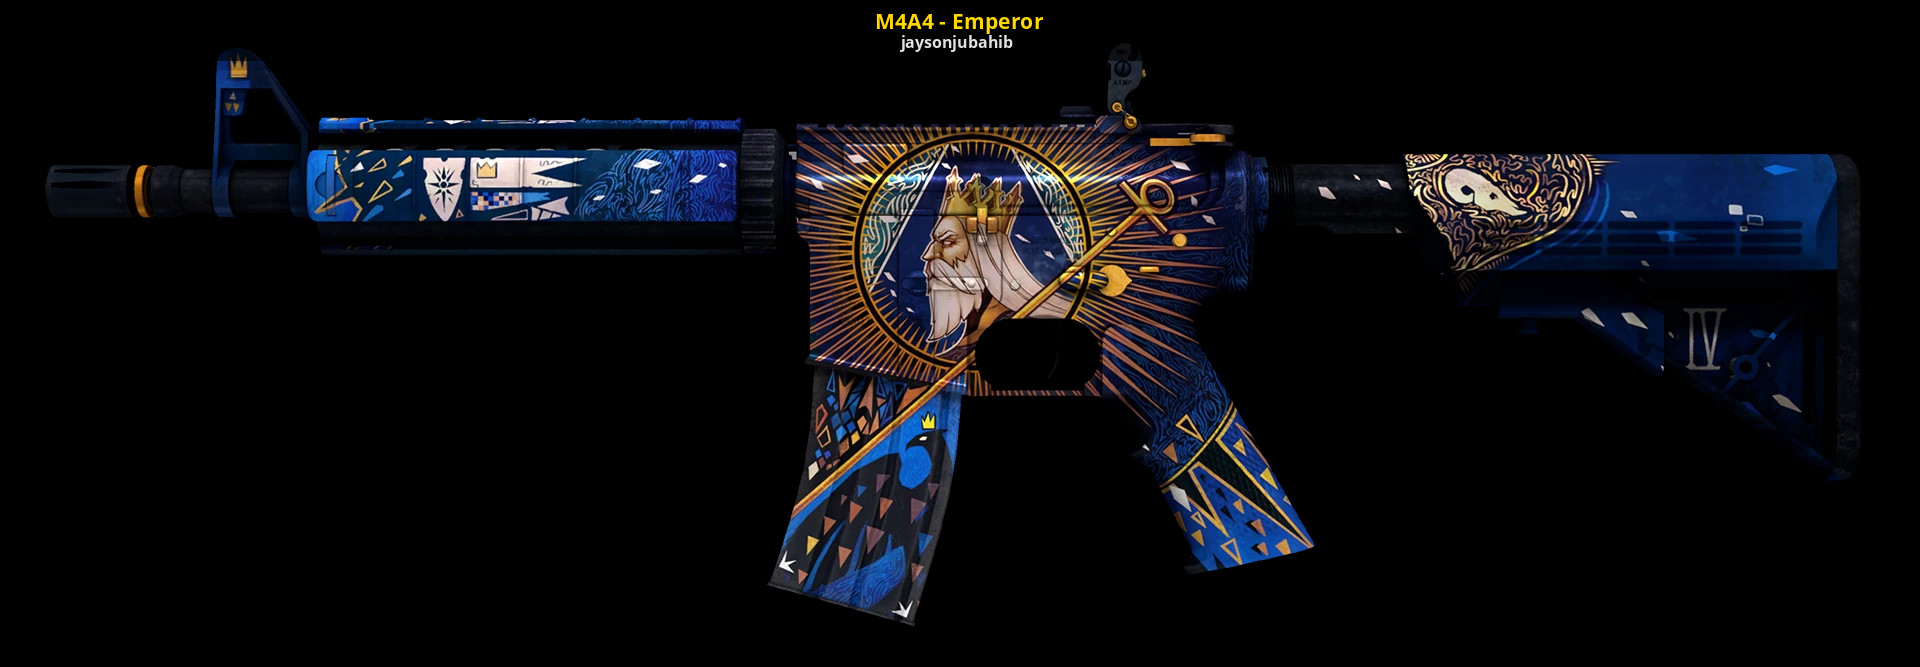 M4a4 the emperor цена фото 8